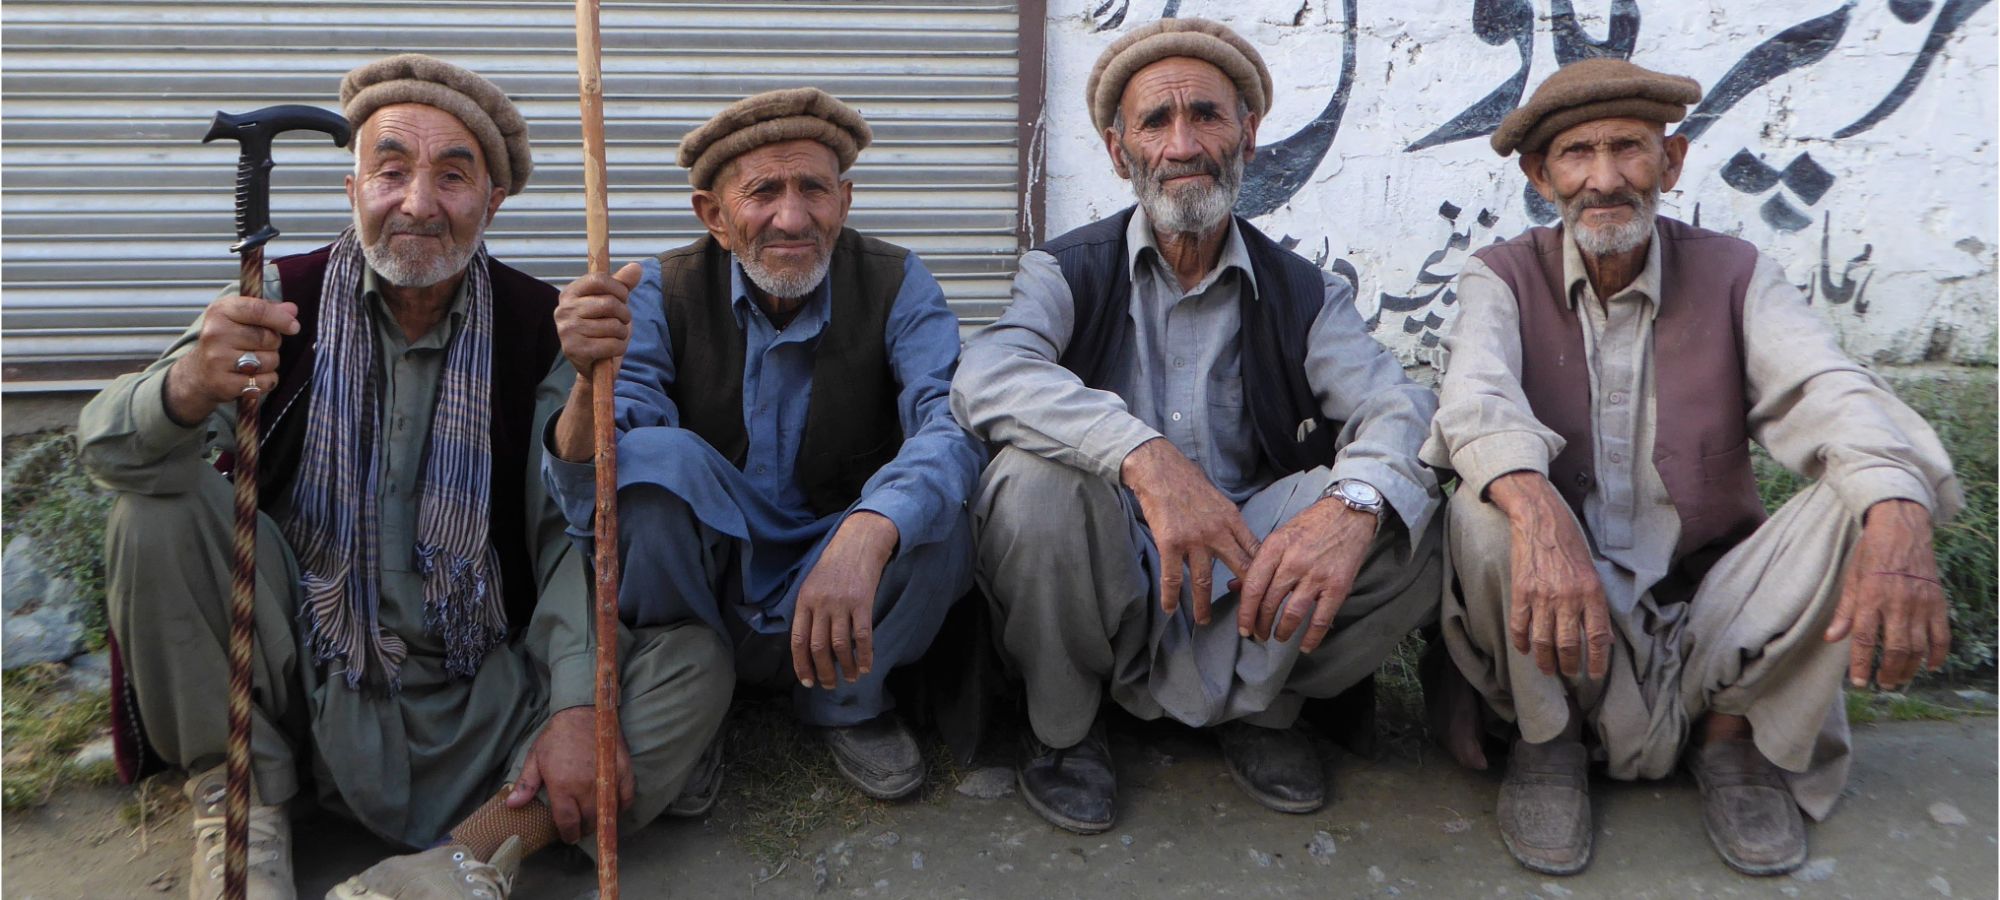 Village Elders, Bagrote Valley, Pakistan 